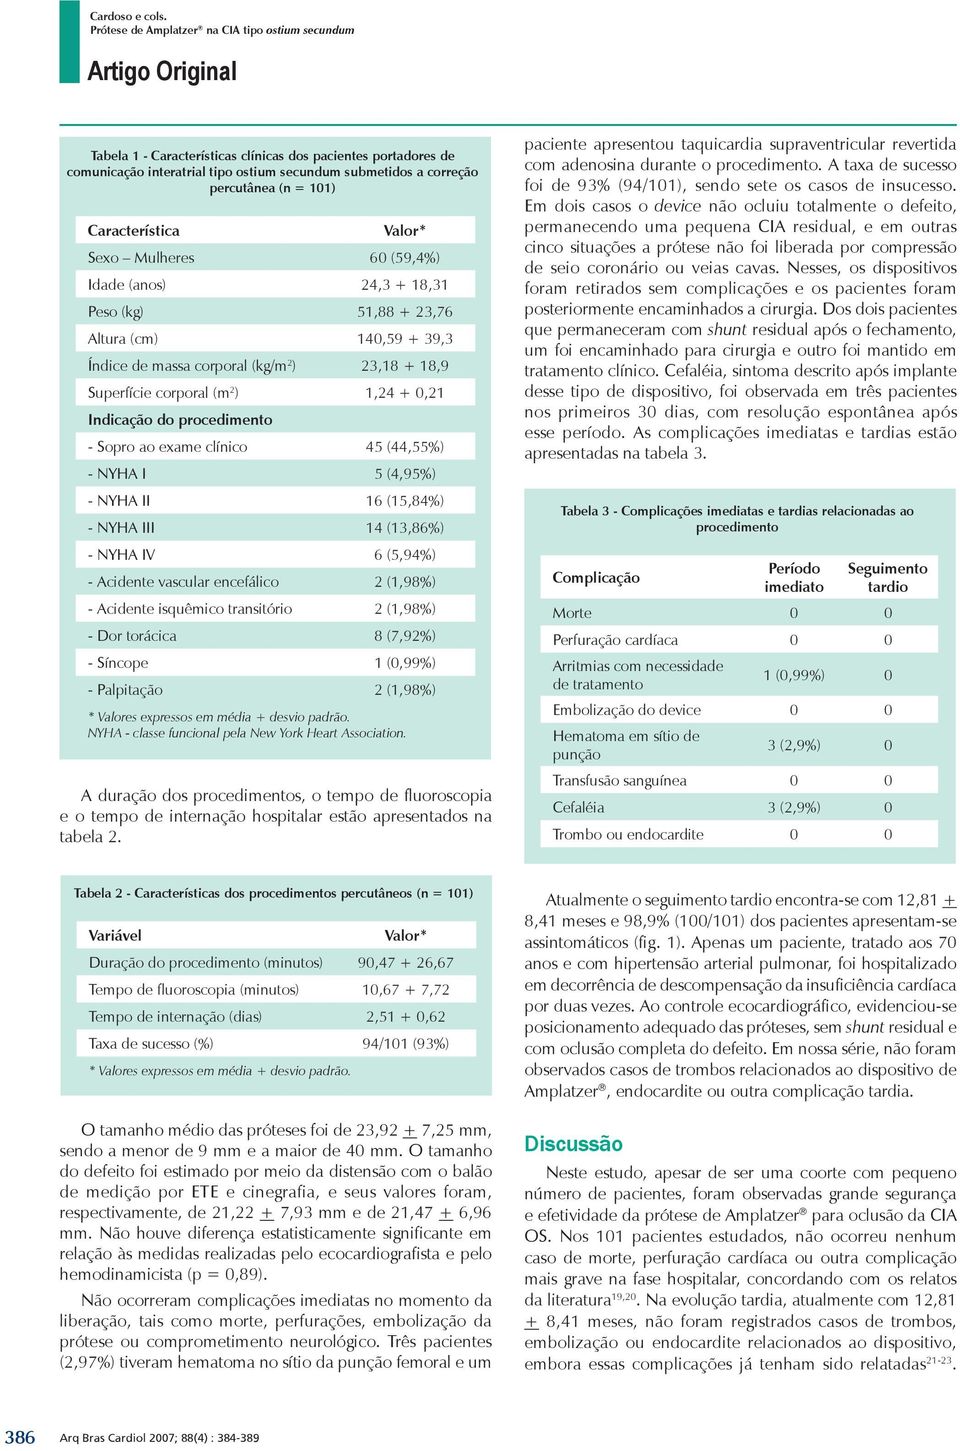 exame clínico 45 (44,55%) - NYHA I 5 (4,95%) - NYHA II 16 (15,84%) - NYHA III 14 (13,86%) - NYHA IV 6 (5,94%) - Acidente vascular encefálico 2 (1,98%) - Acidente isquêmico transitório 2 (1,98%) - Dor